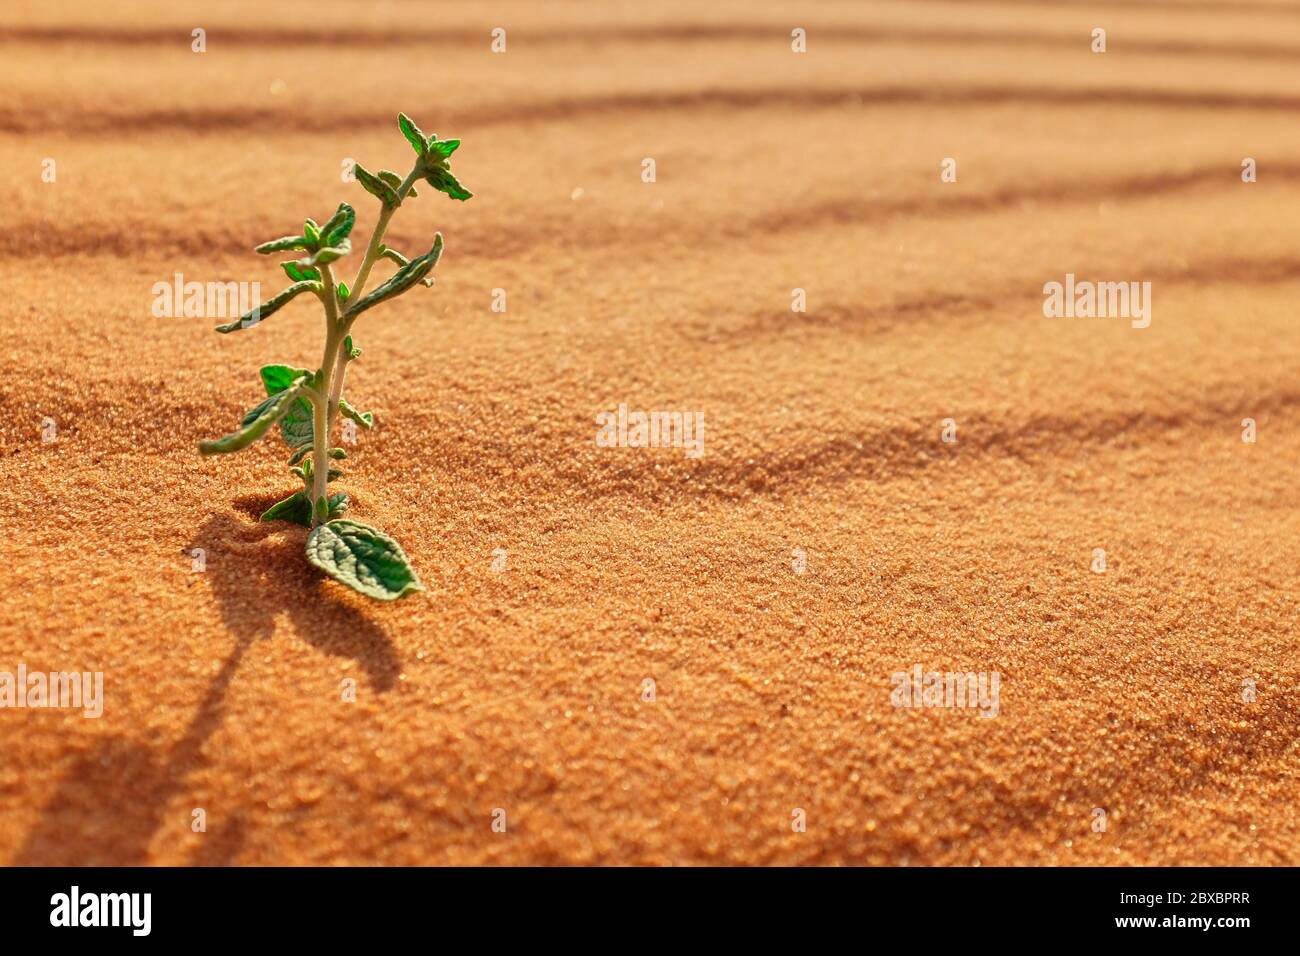 Eine kleine junge Pflanze, die auf einer heißen Wüstenlandschaft wächst. Symbol der Hoffnung, des Lebens und des Neubeginns Konzept. Stockfoto